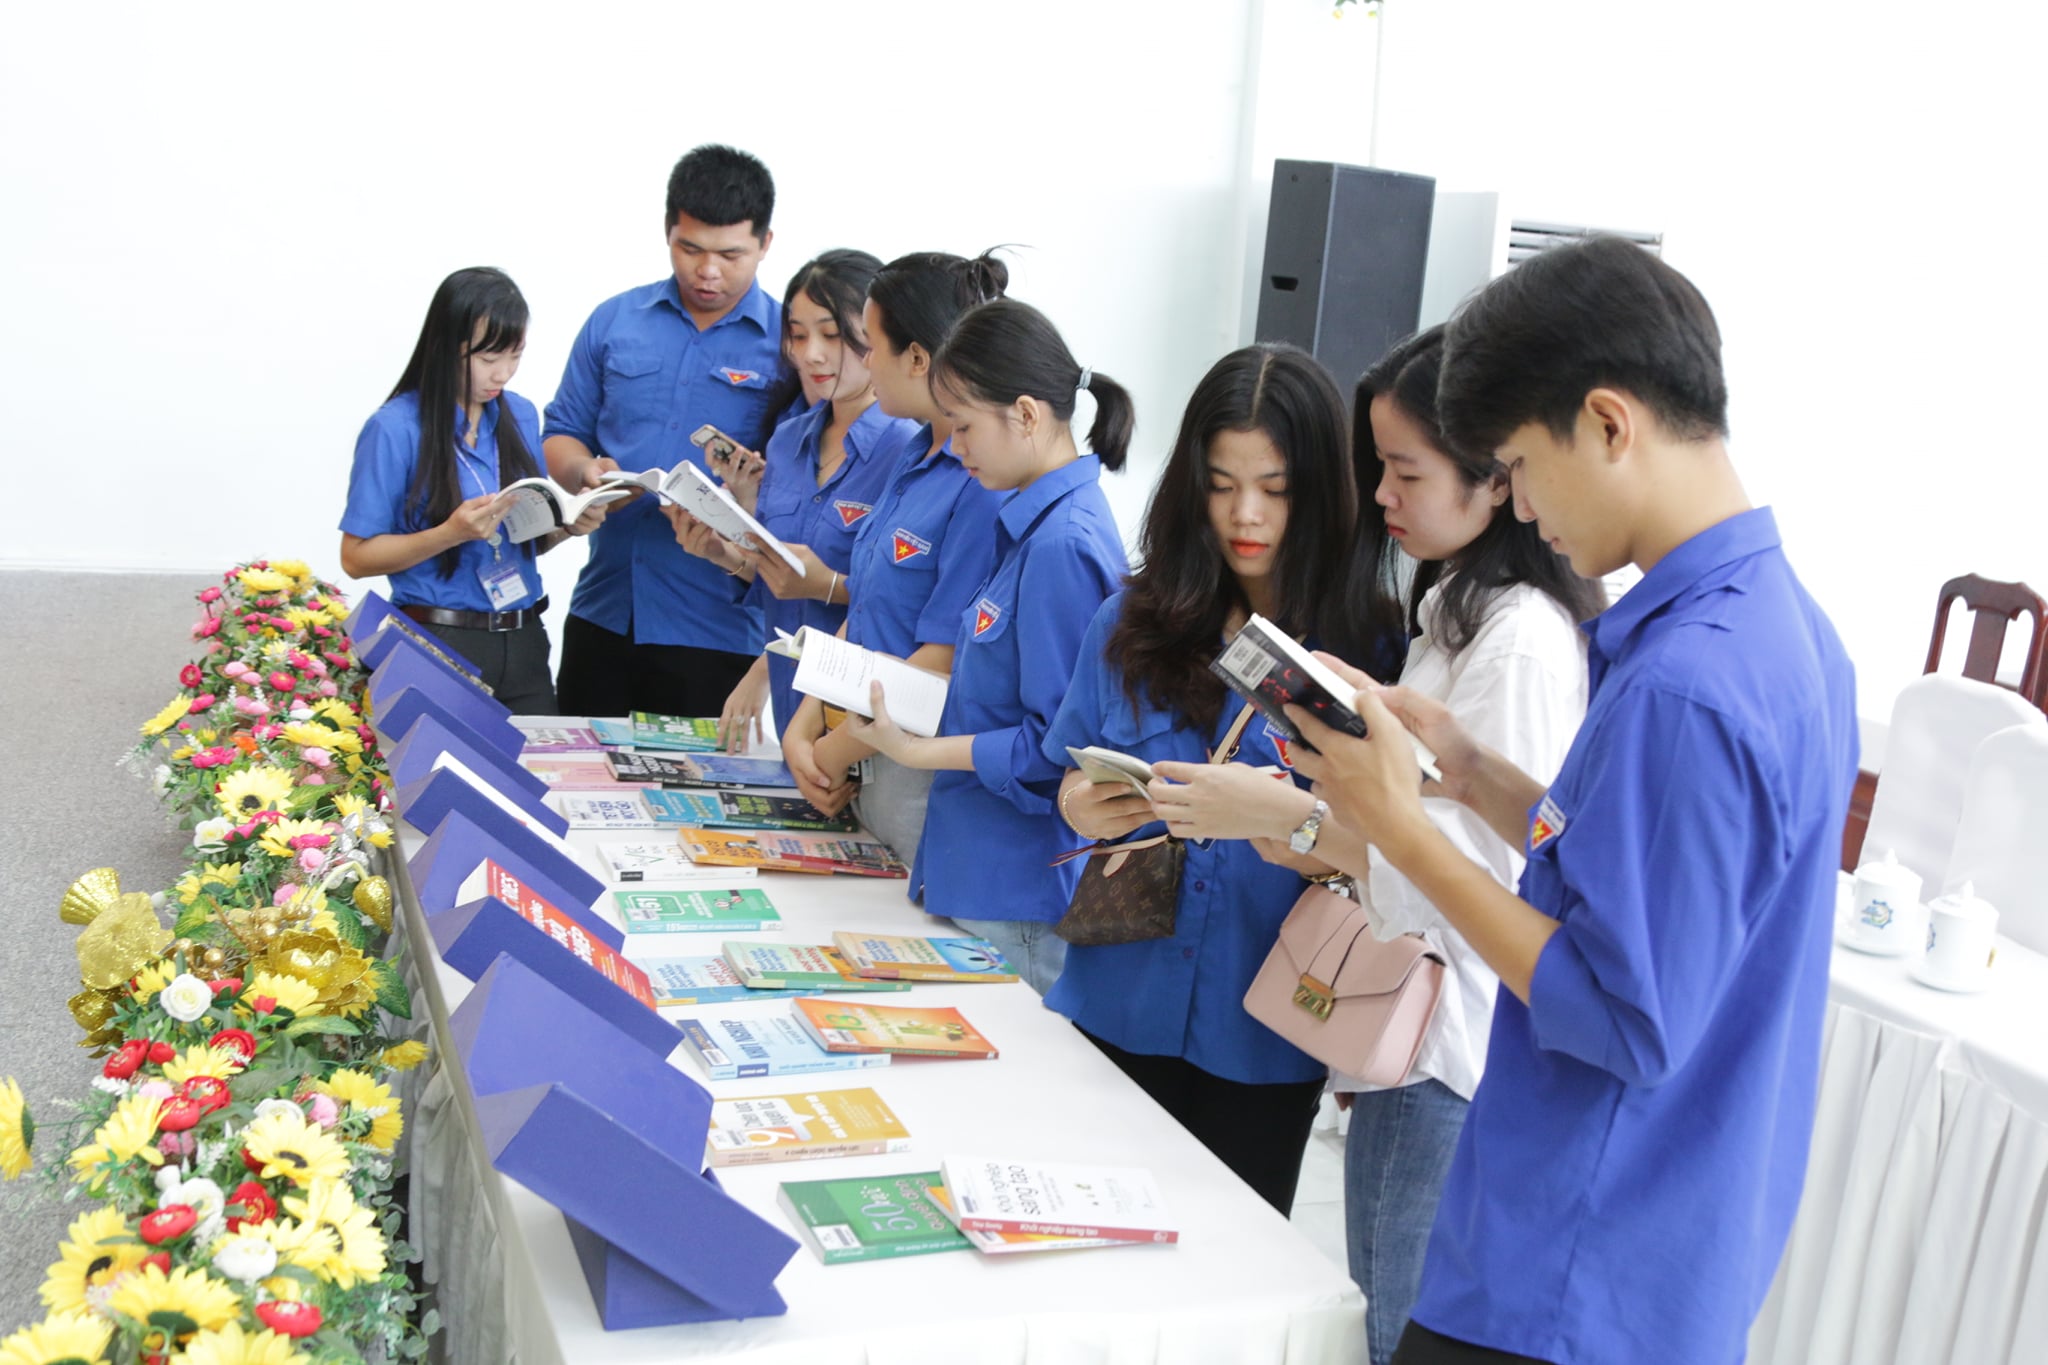 Tuần lễ sách và văn hóa đọc Việt Nam năm 2021